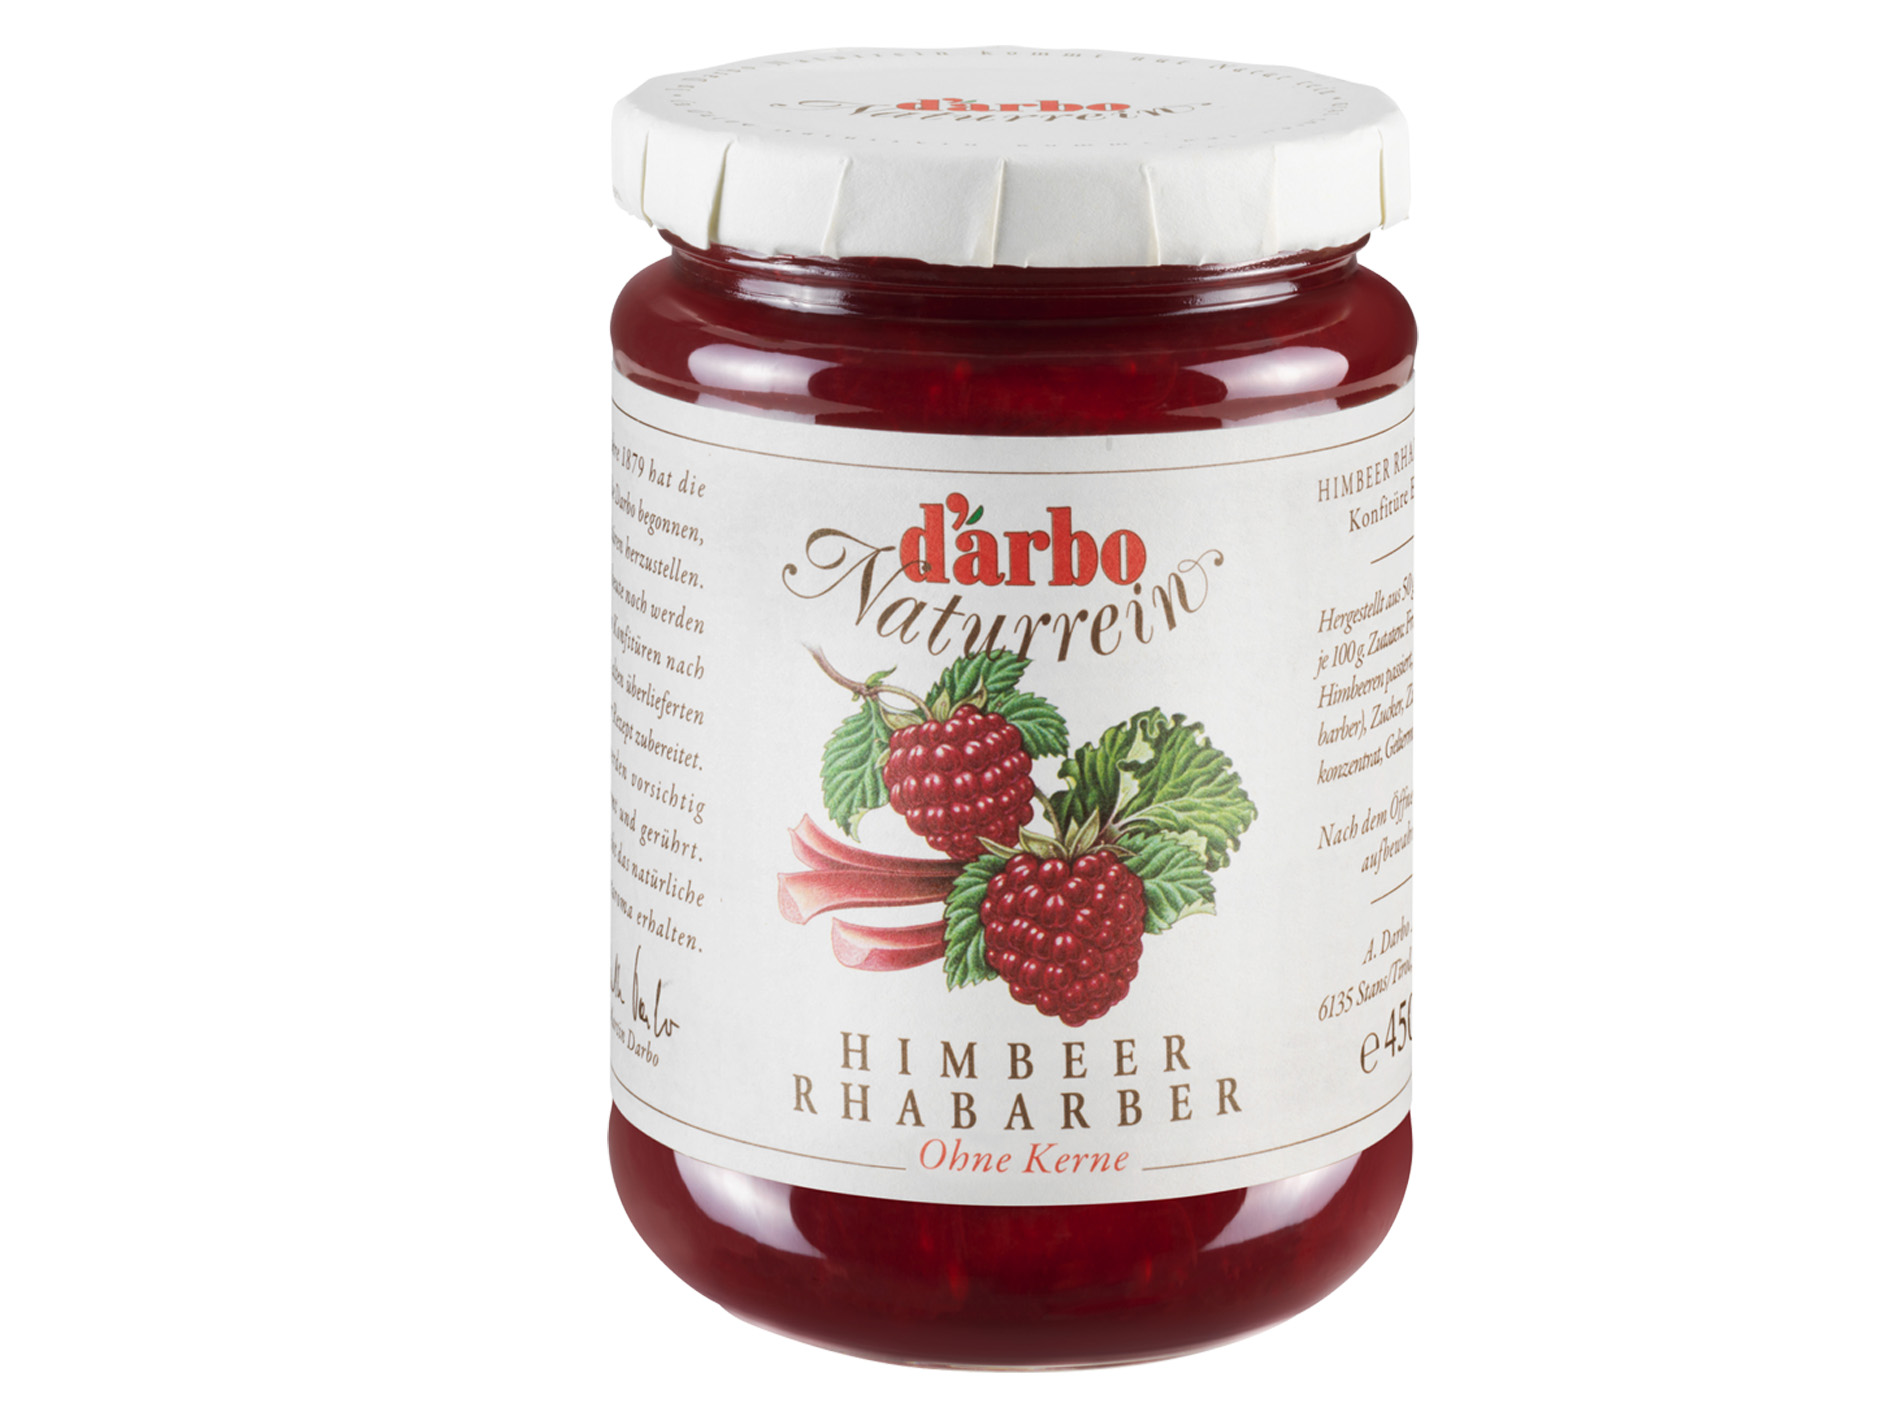 Darbo Naturrein Himbeer Rhabarber 50% Fruchtanteil 450 g - Schmankerl ...